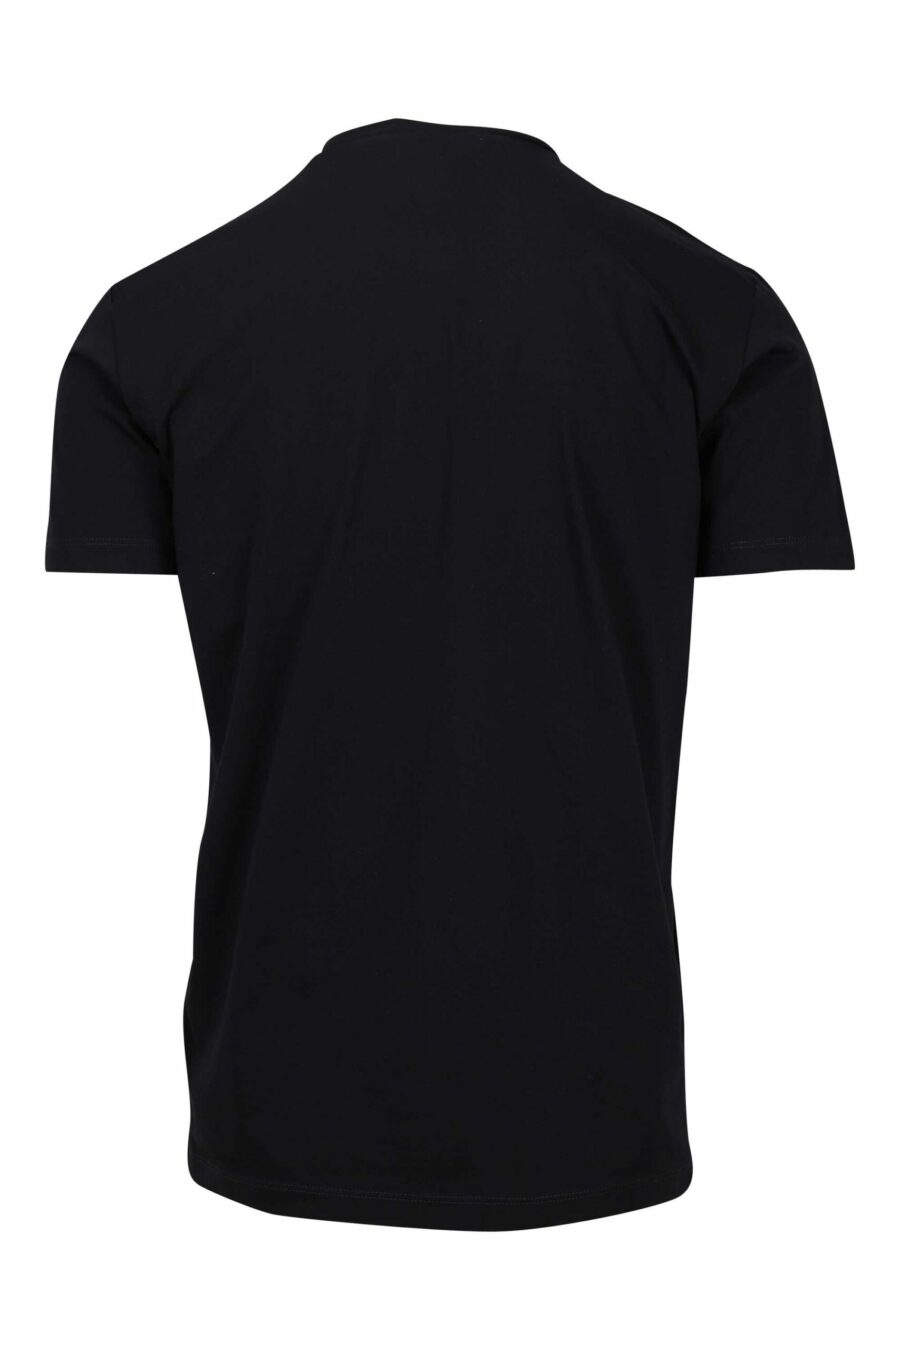 T-shirt preta com maxilogo "ícone" quadrado - 8052134981047 1 à escala